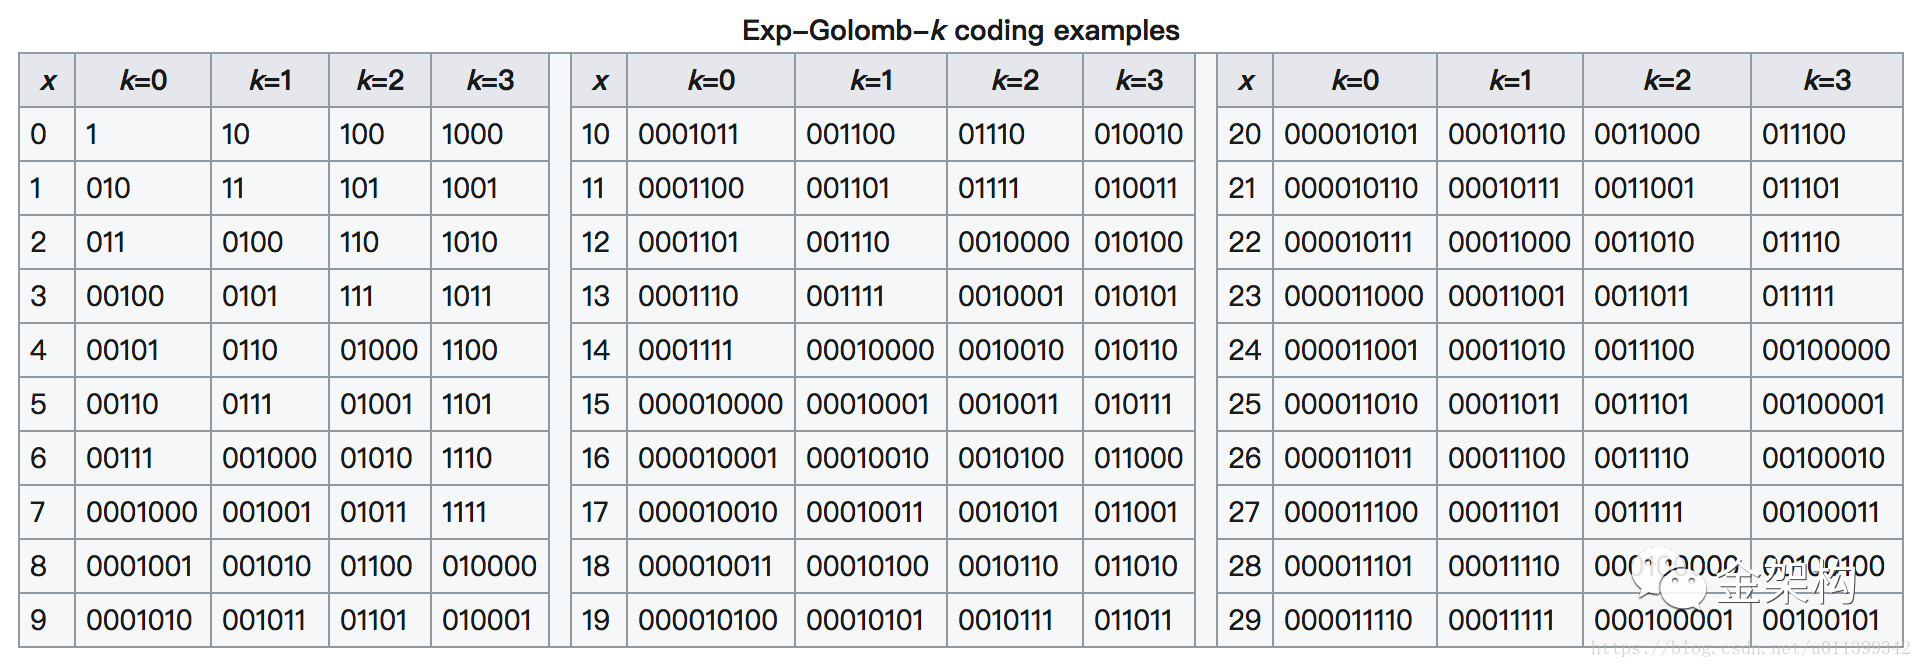 K阶指数哥伦布编码举例